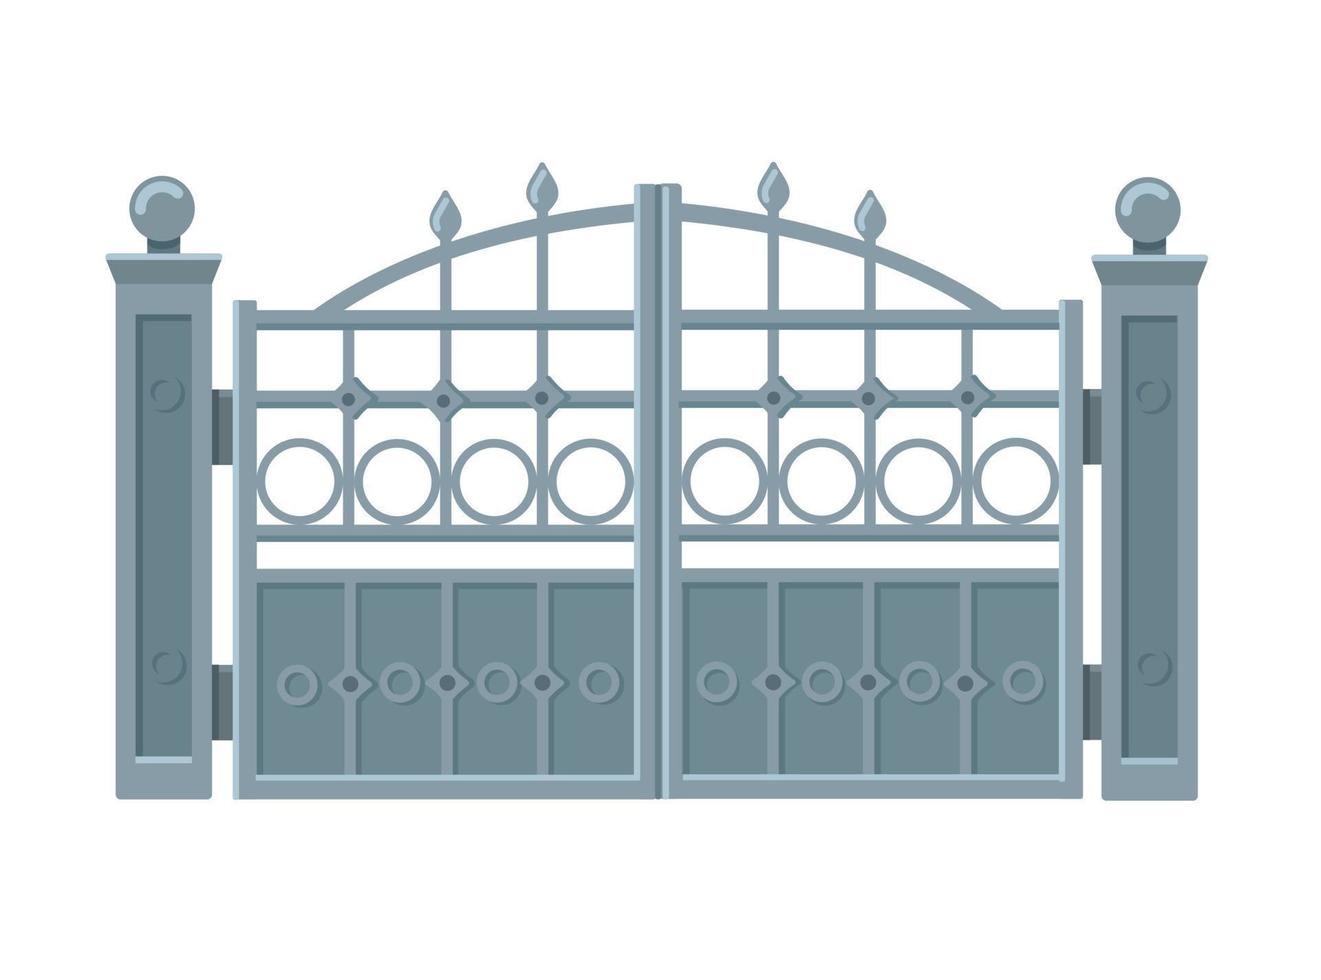 portões de metal cinza em estilo moderno plano isolado no fundo branco. ilustração vetorial vetor